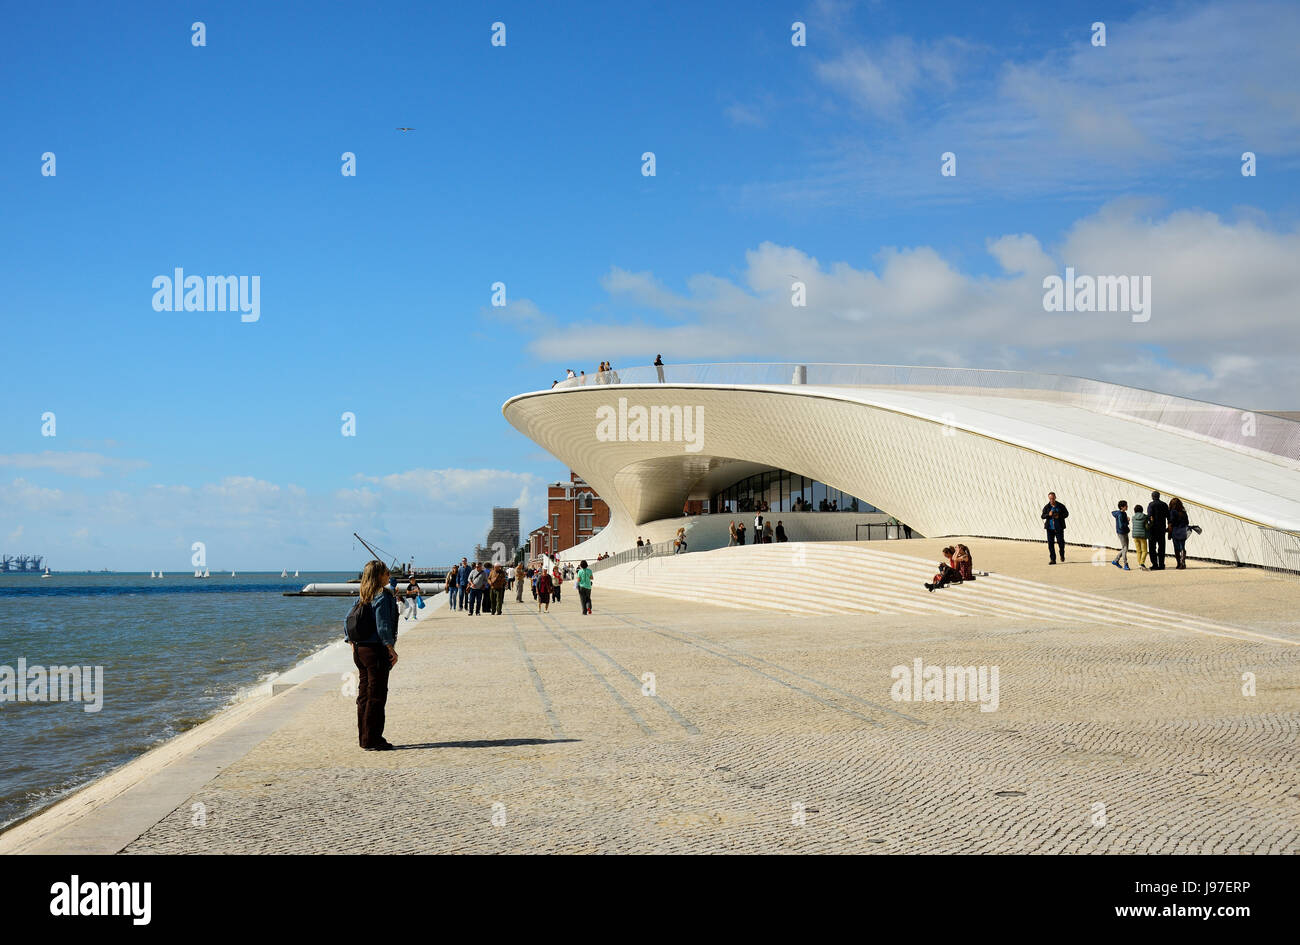 El MAAT (Museo de Arte, Arquitectura y tecnología), bordeando el río Tajo, fue diseñado por el arquitecto británico Amanda Levete. Lisboa, Portugal Foto de stock